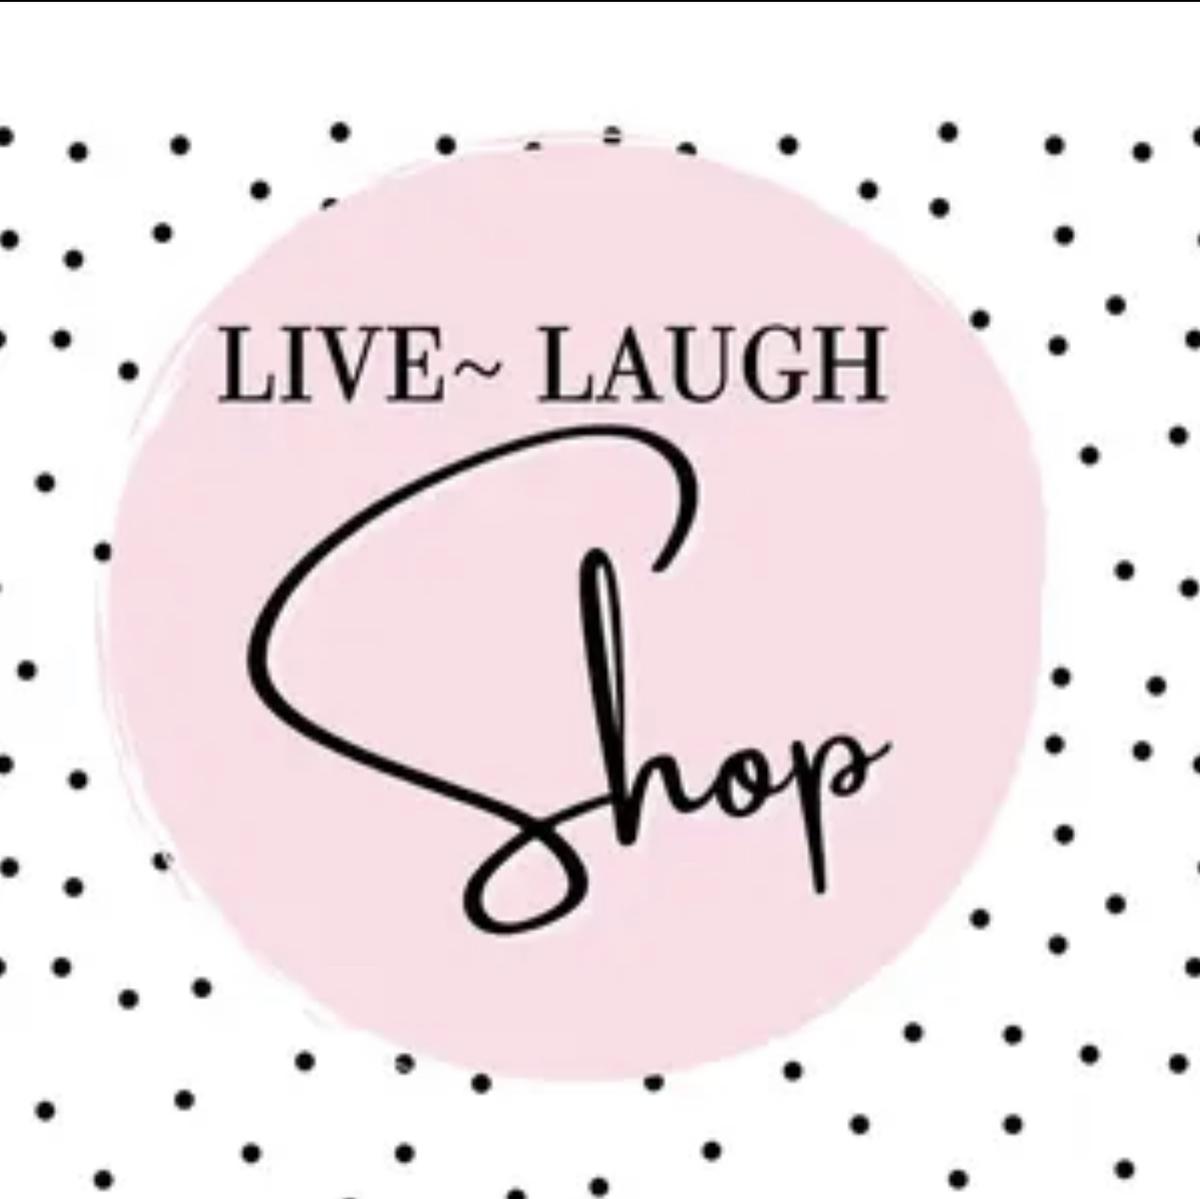 Live Laugh Shop's images